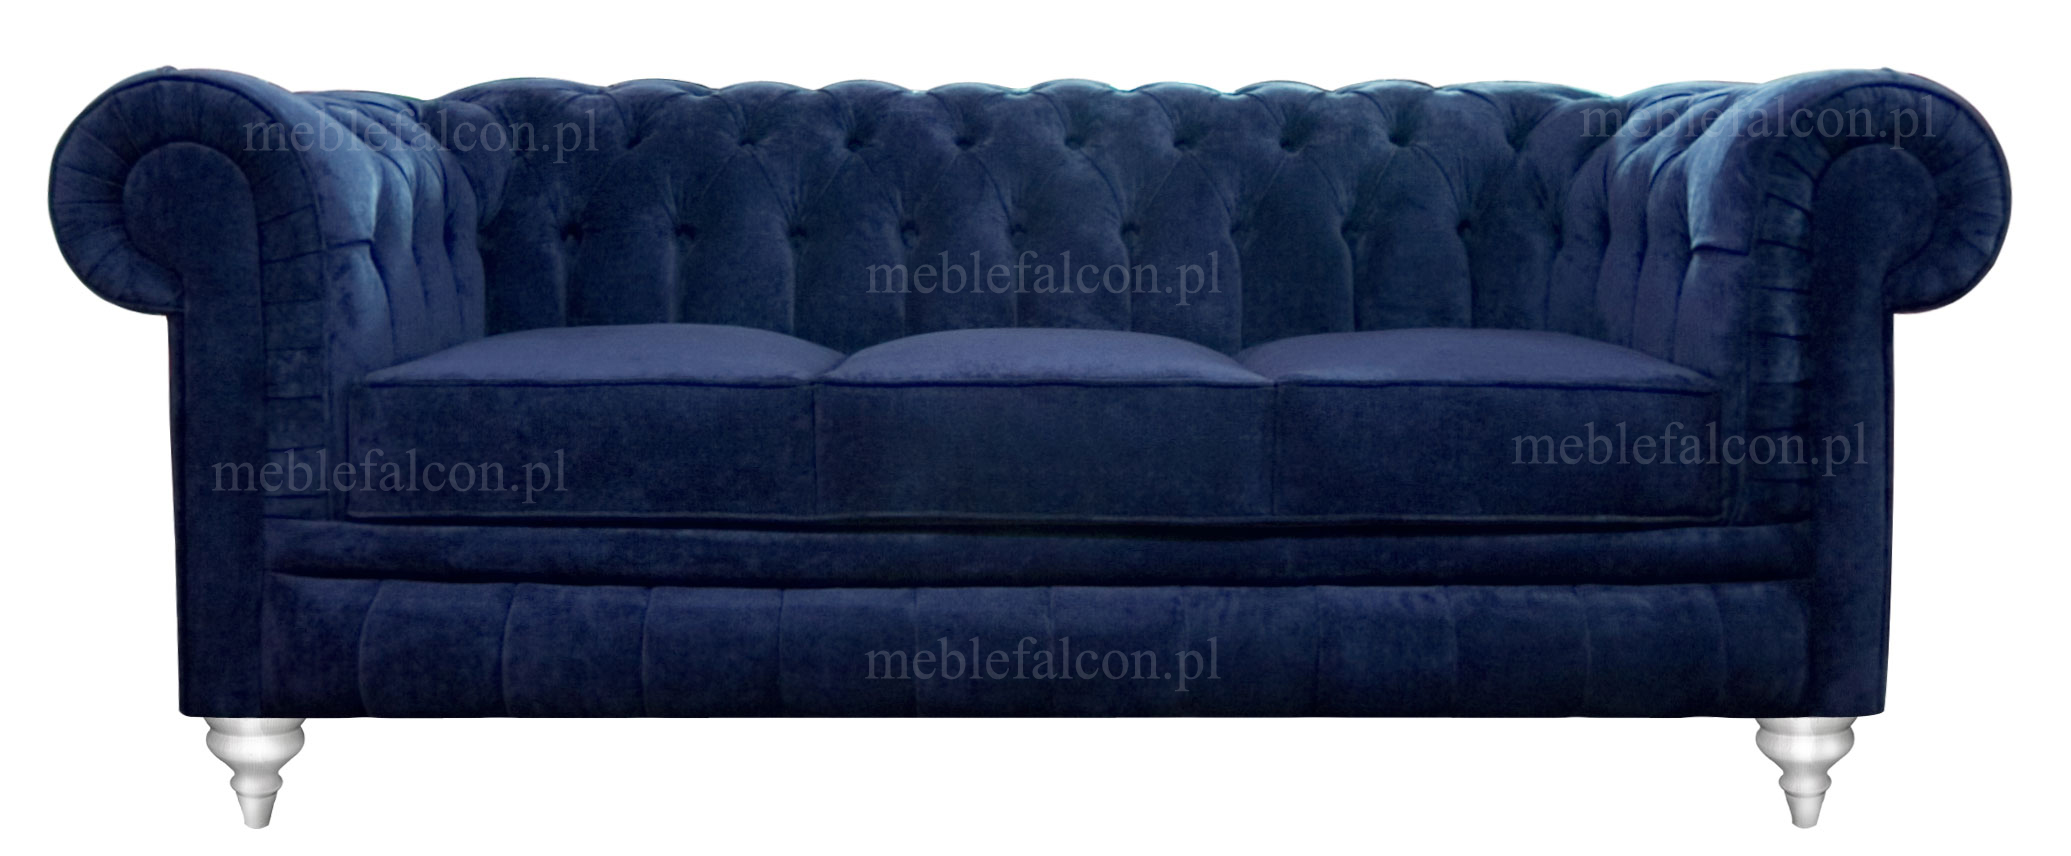 sofa niebieska granatowa, sofa stylizowana o klasycznej linii sofy chesterfield, sofa do salonu